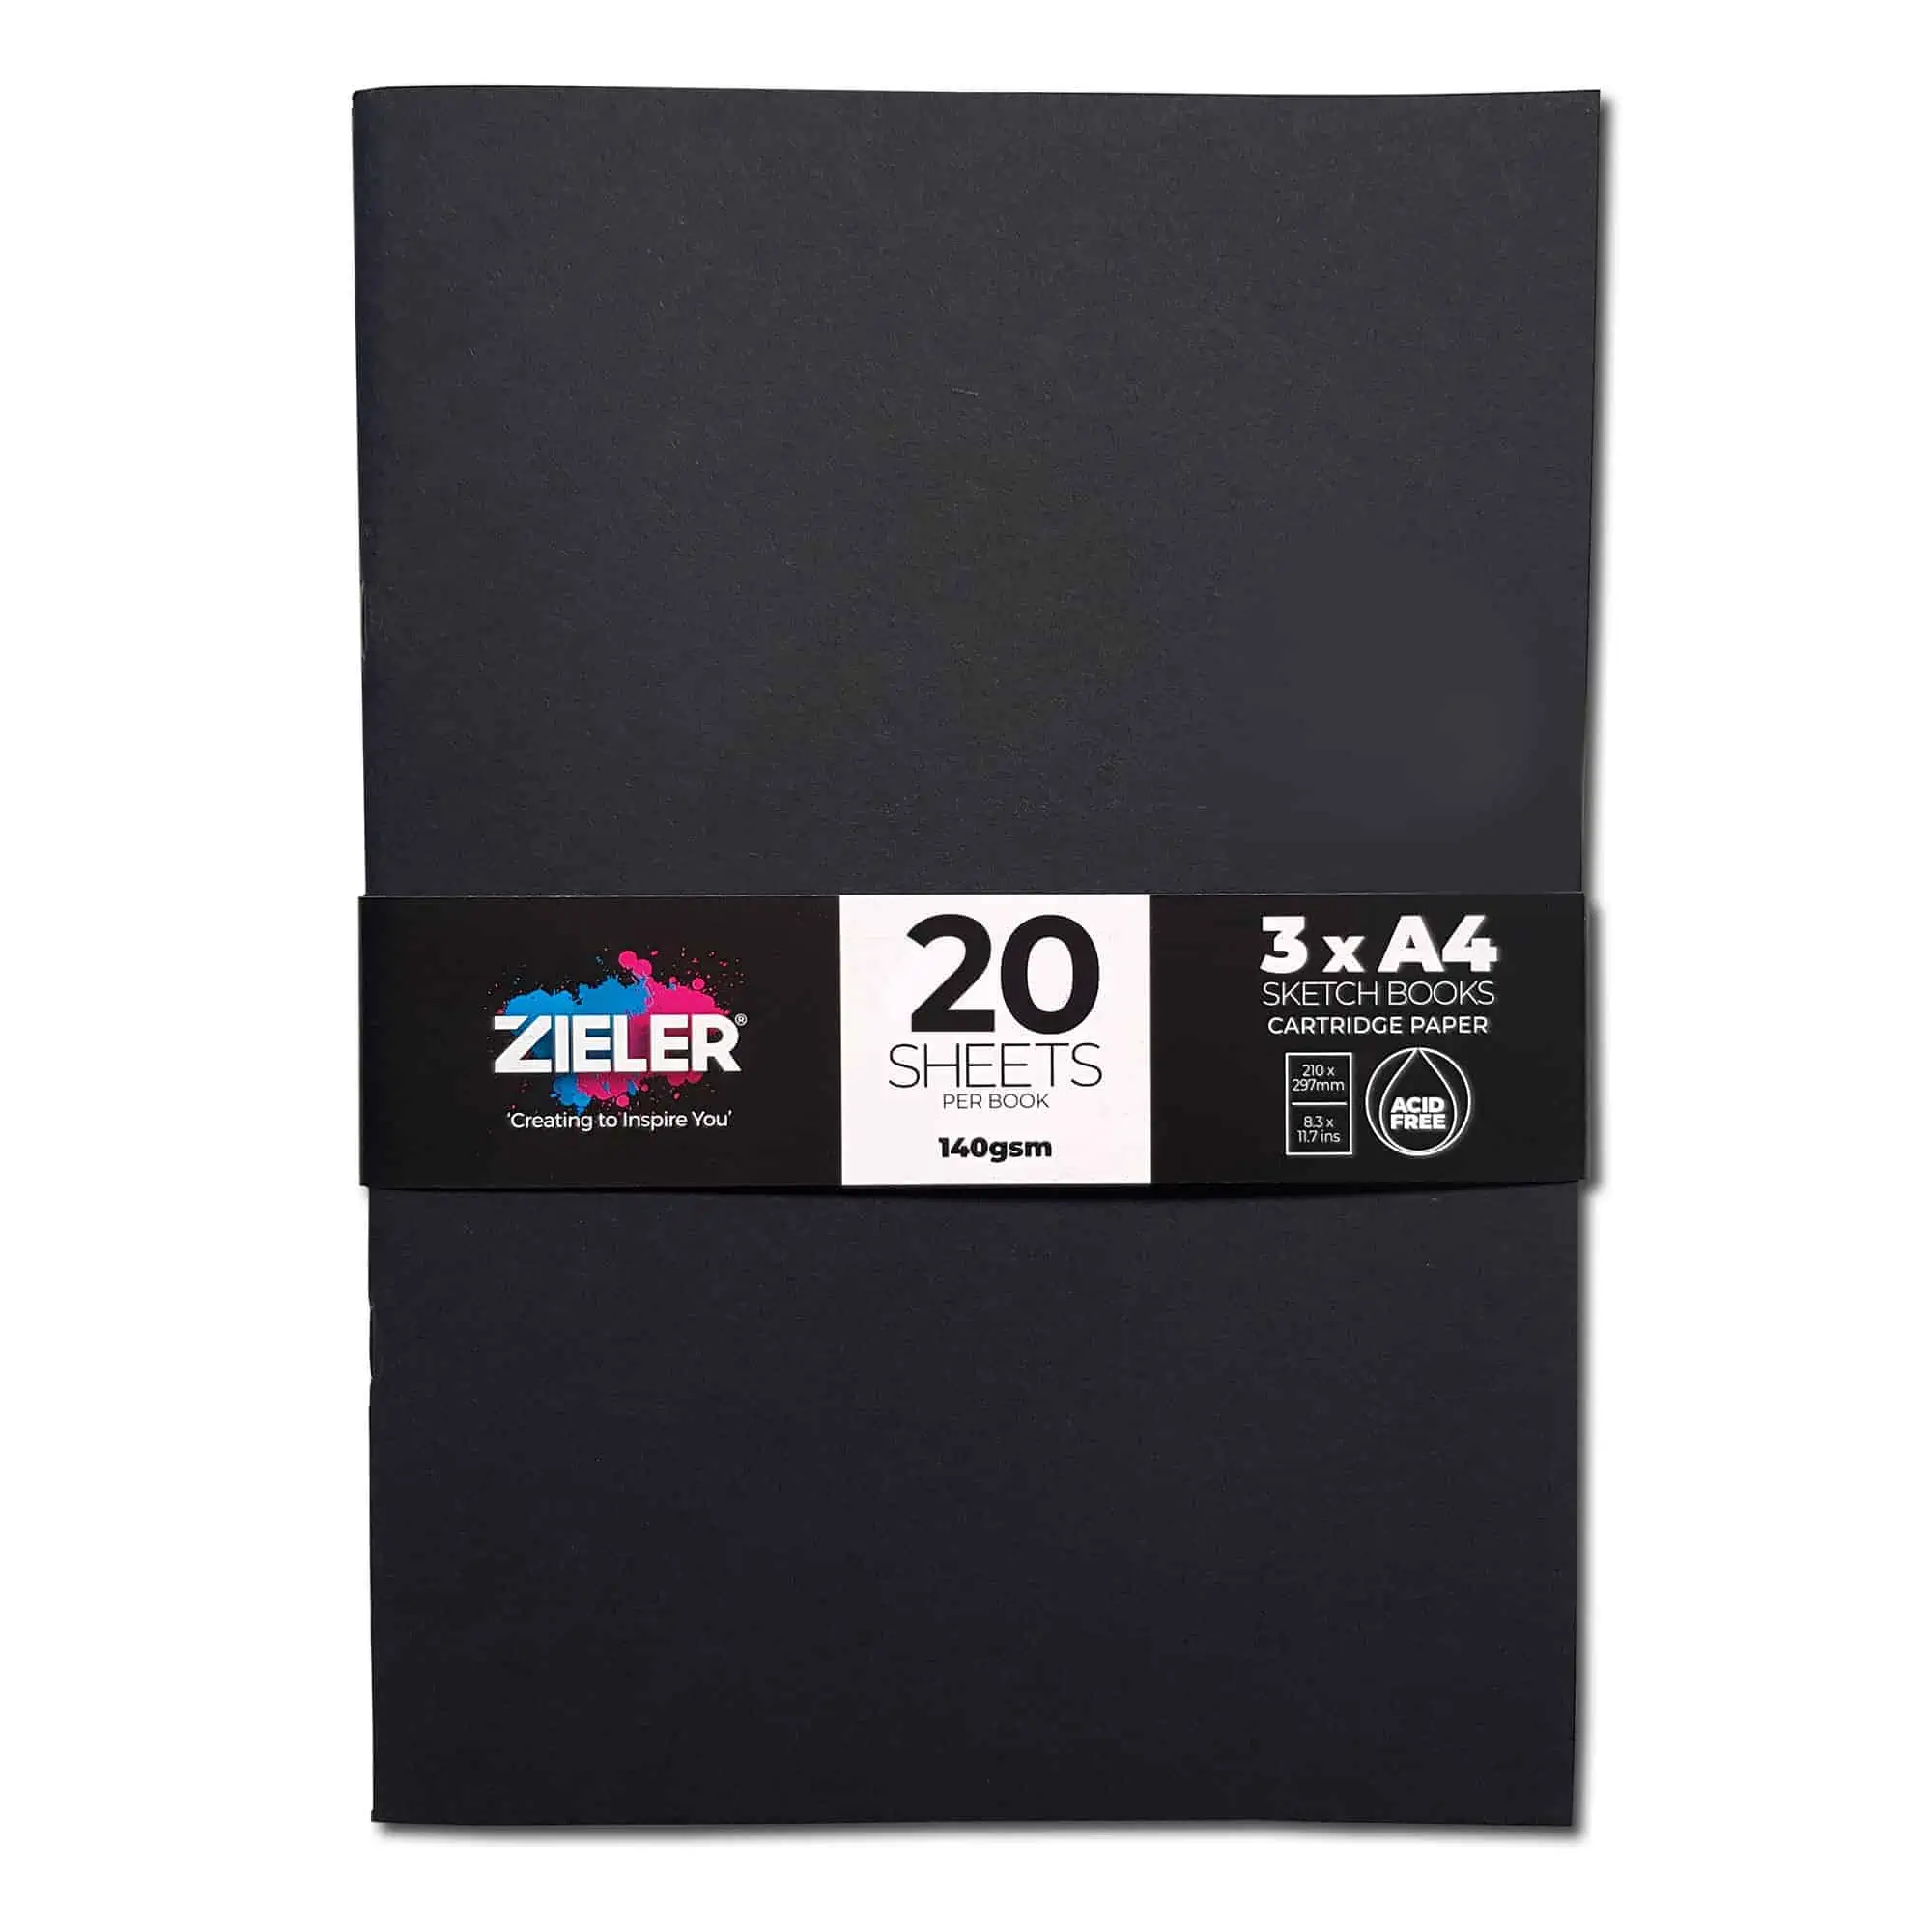 A4 Sketchbook -Soft Cover 140gsm, 20 Sheets (Pack 3) - Zieler Art Supplies